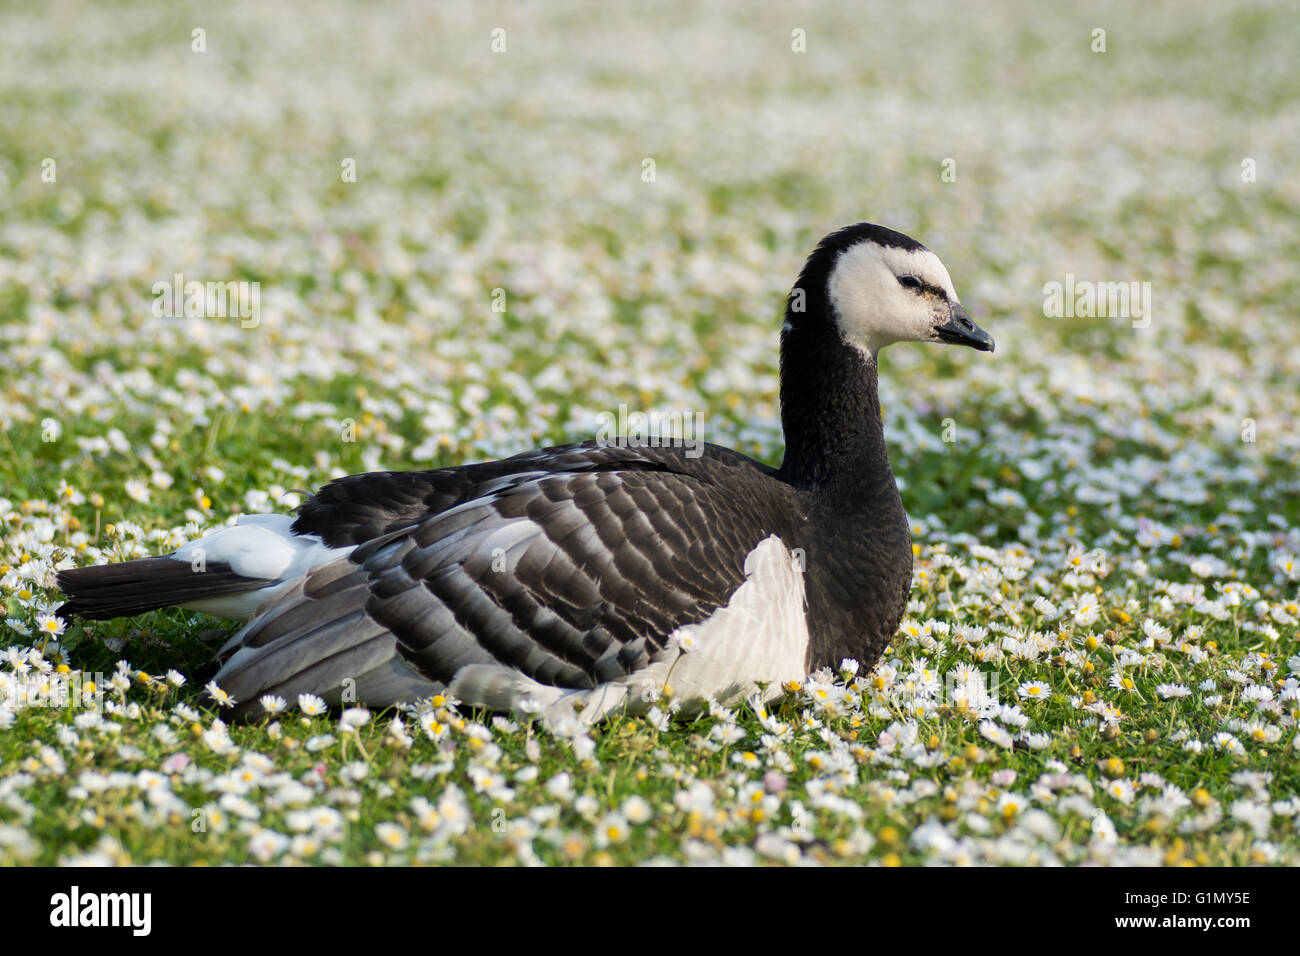 Barnacle goose (Branta leucopsis). Bianco e nero uccello in famiglia anatidi, seduto tra erba corta con margherite in fiori Foto Stock